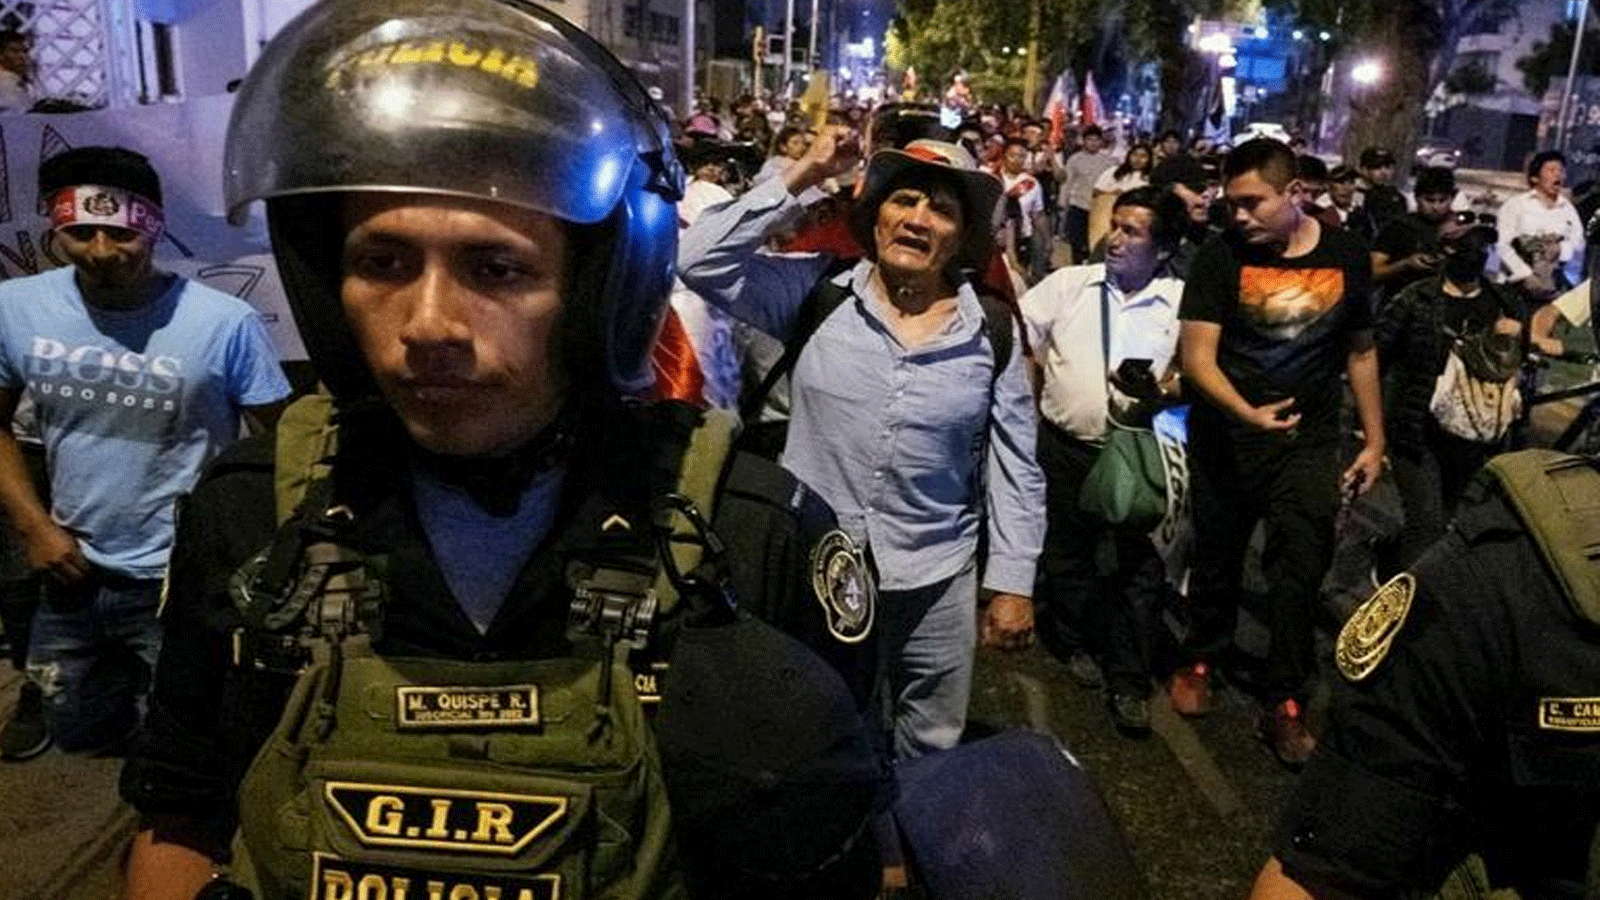 متظاهرون يطالبون باستقالة رئيسة بيرو دينا بولوارتي وإغلاق الكونغرس في منطقة سكنية في ليما.15 كانون الثاني\يناير 2023 